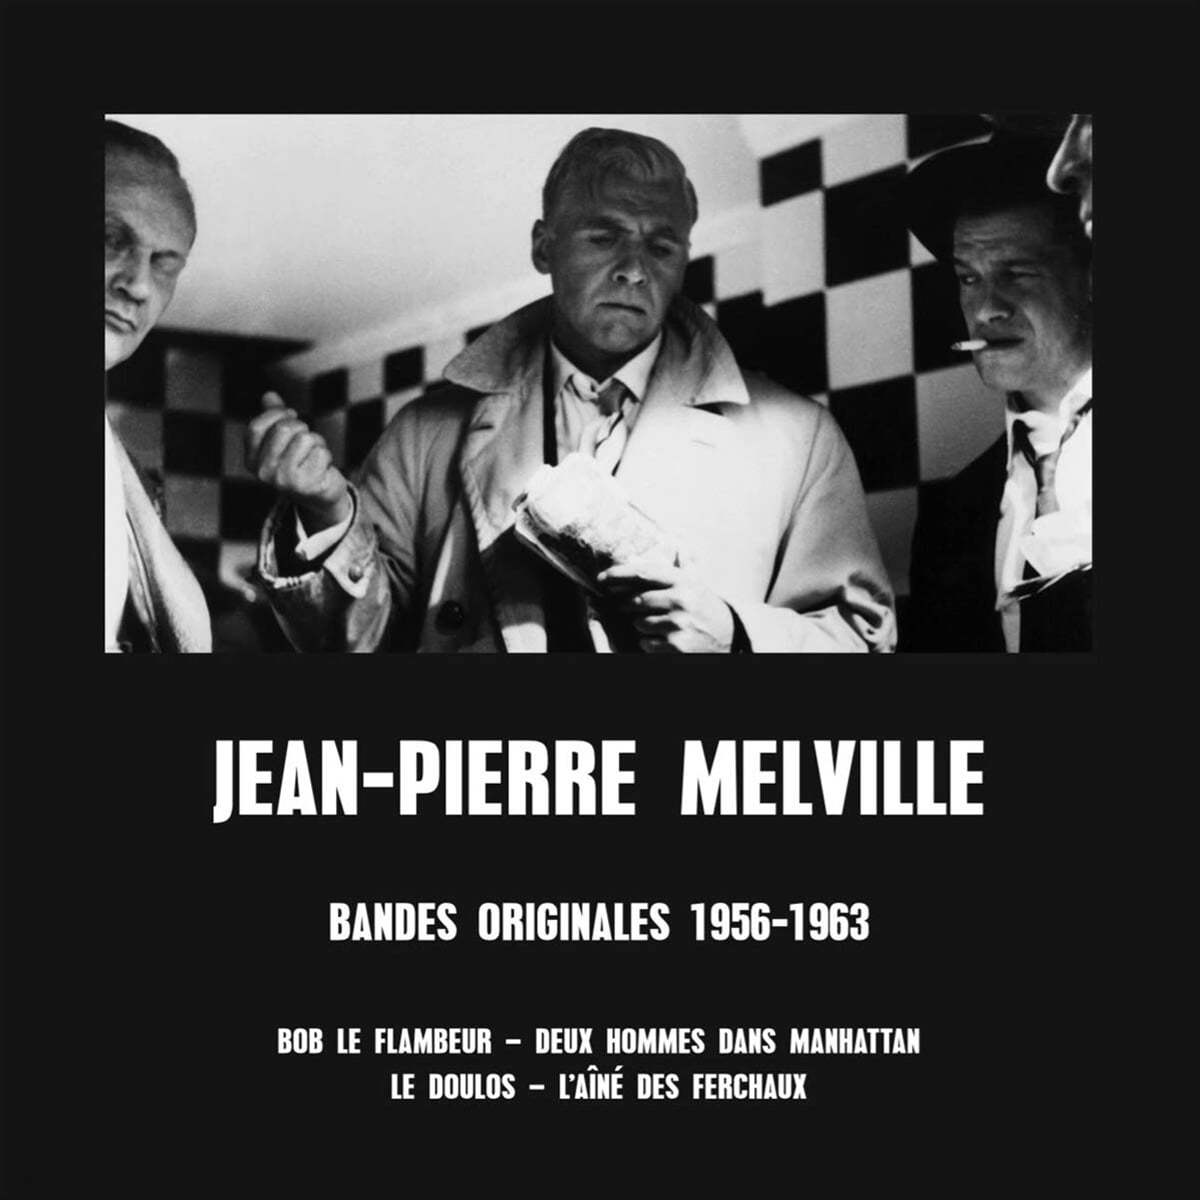 장-피에르 멜빌: 영화 음악 모음 (Jean-Pierre Melville: Bandes Originales 1956-1963) [LP] 